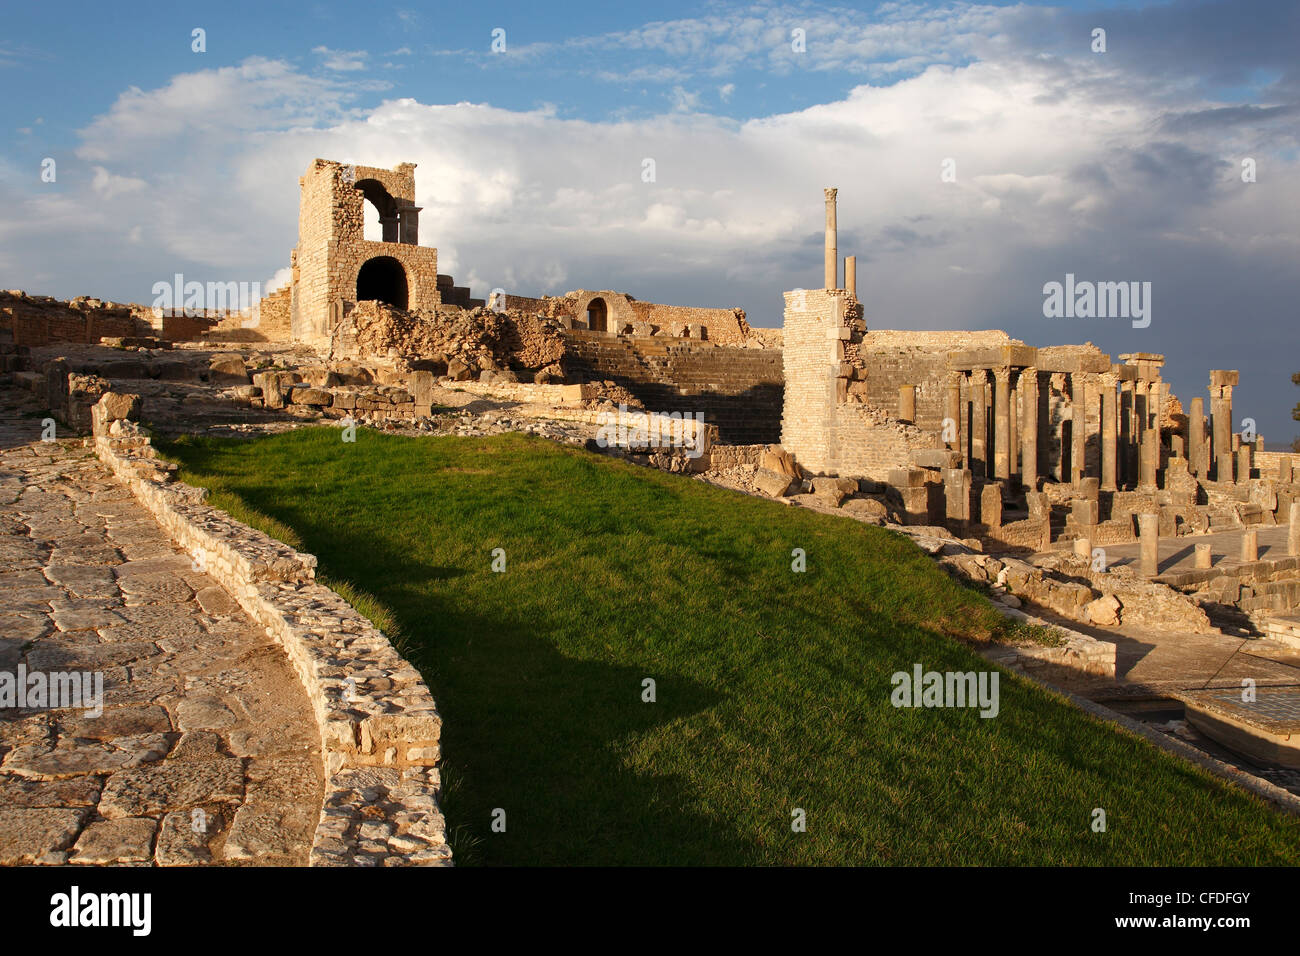 Ruines du théâtre romain, le site archéologique de Dougga, UNESCO World Heritage Site, Tunisie, Afrique du Nord, Afrique Banque D'Images